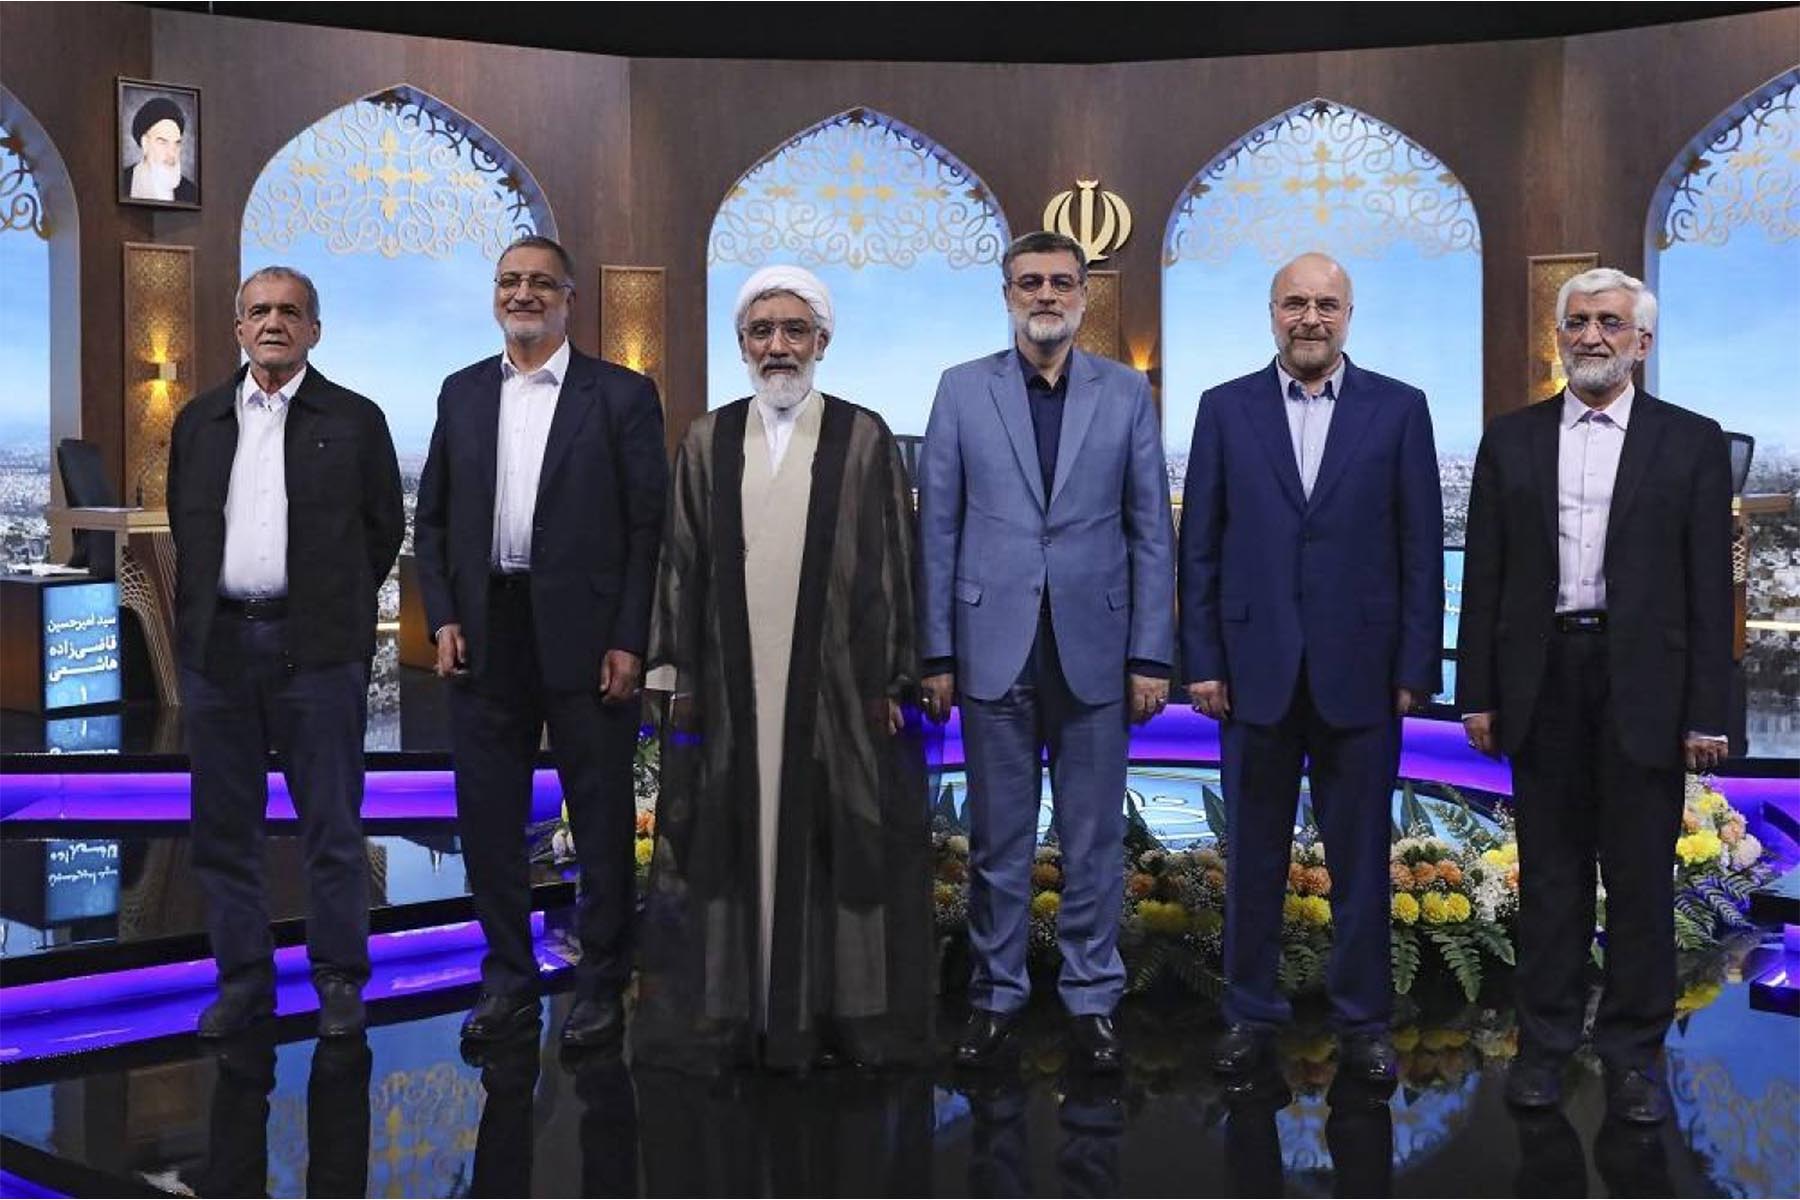 انتخابات ساختگی ریاست جمهوری ایران، ملت را در مسیر خطرناک خود نگه خواهد داشت